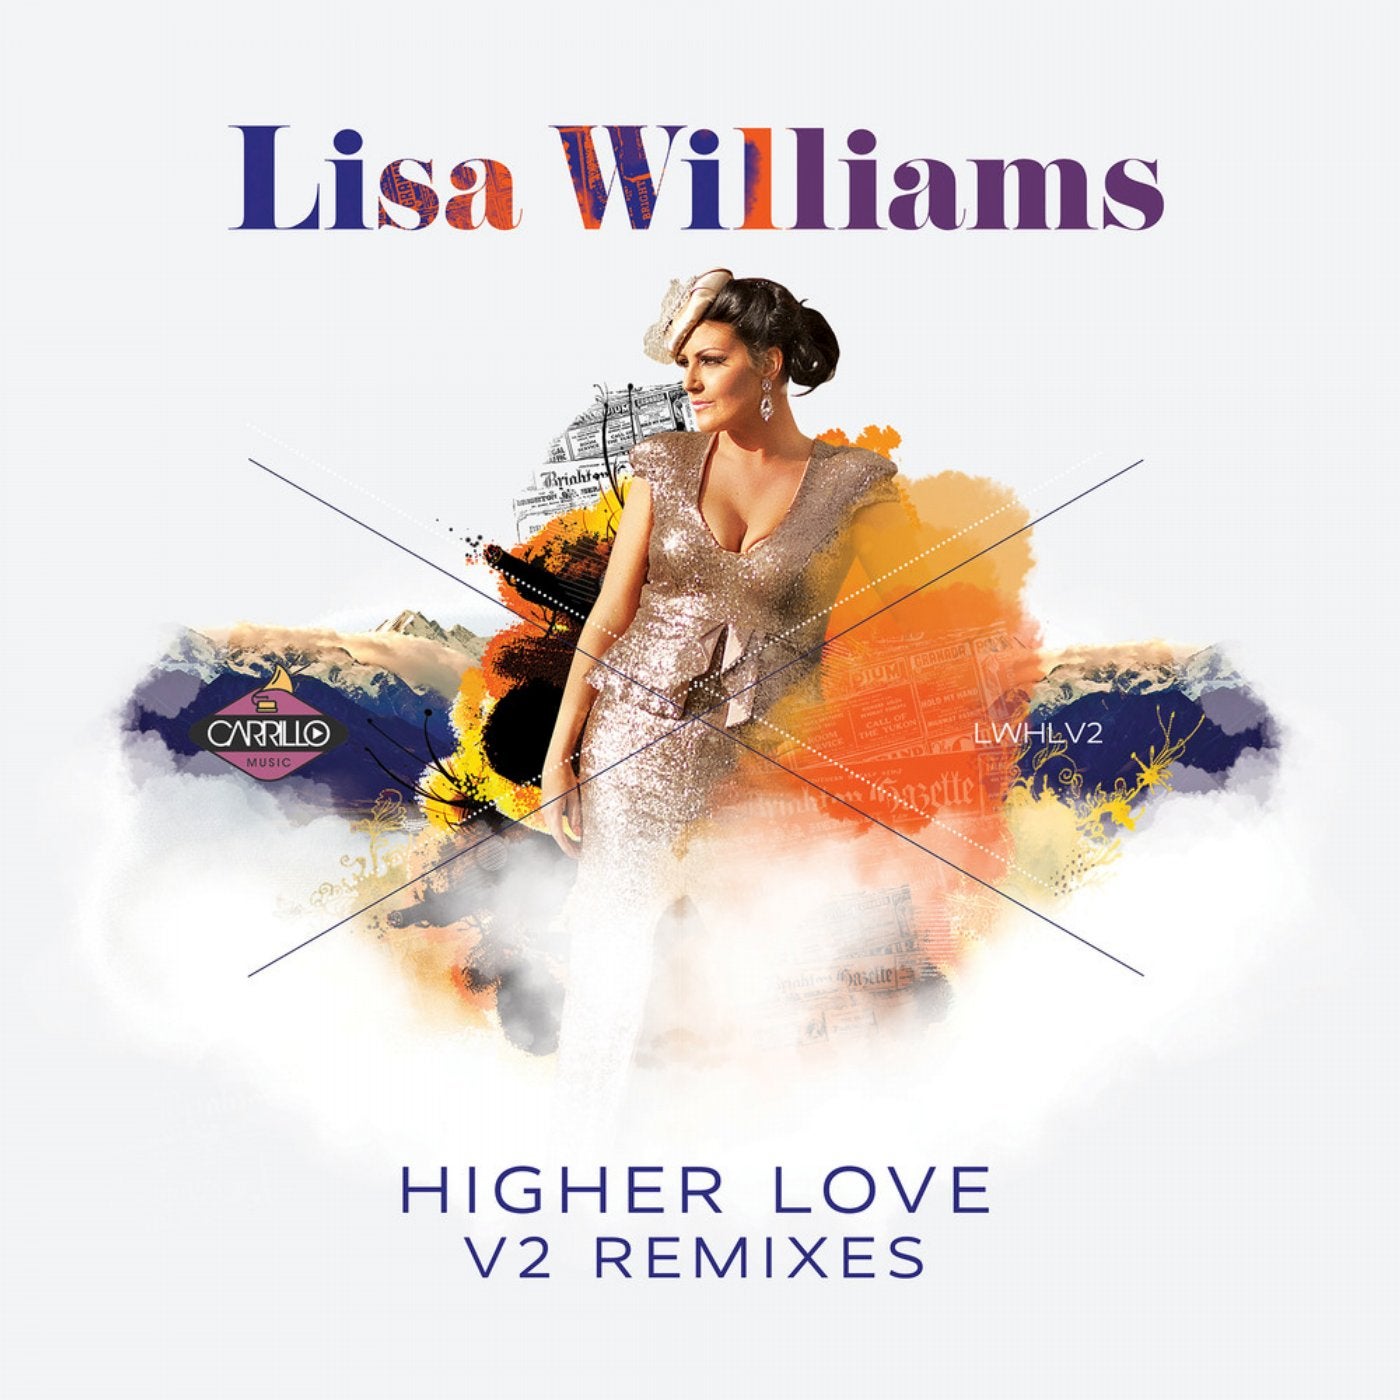 Higher Love (V2 Remixes)